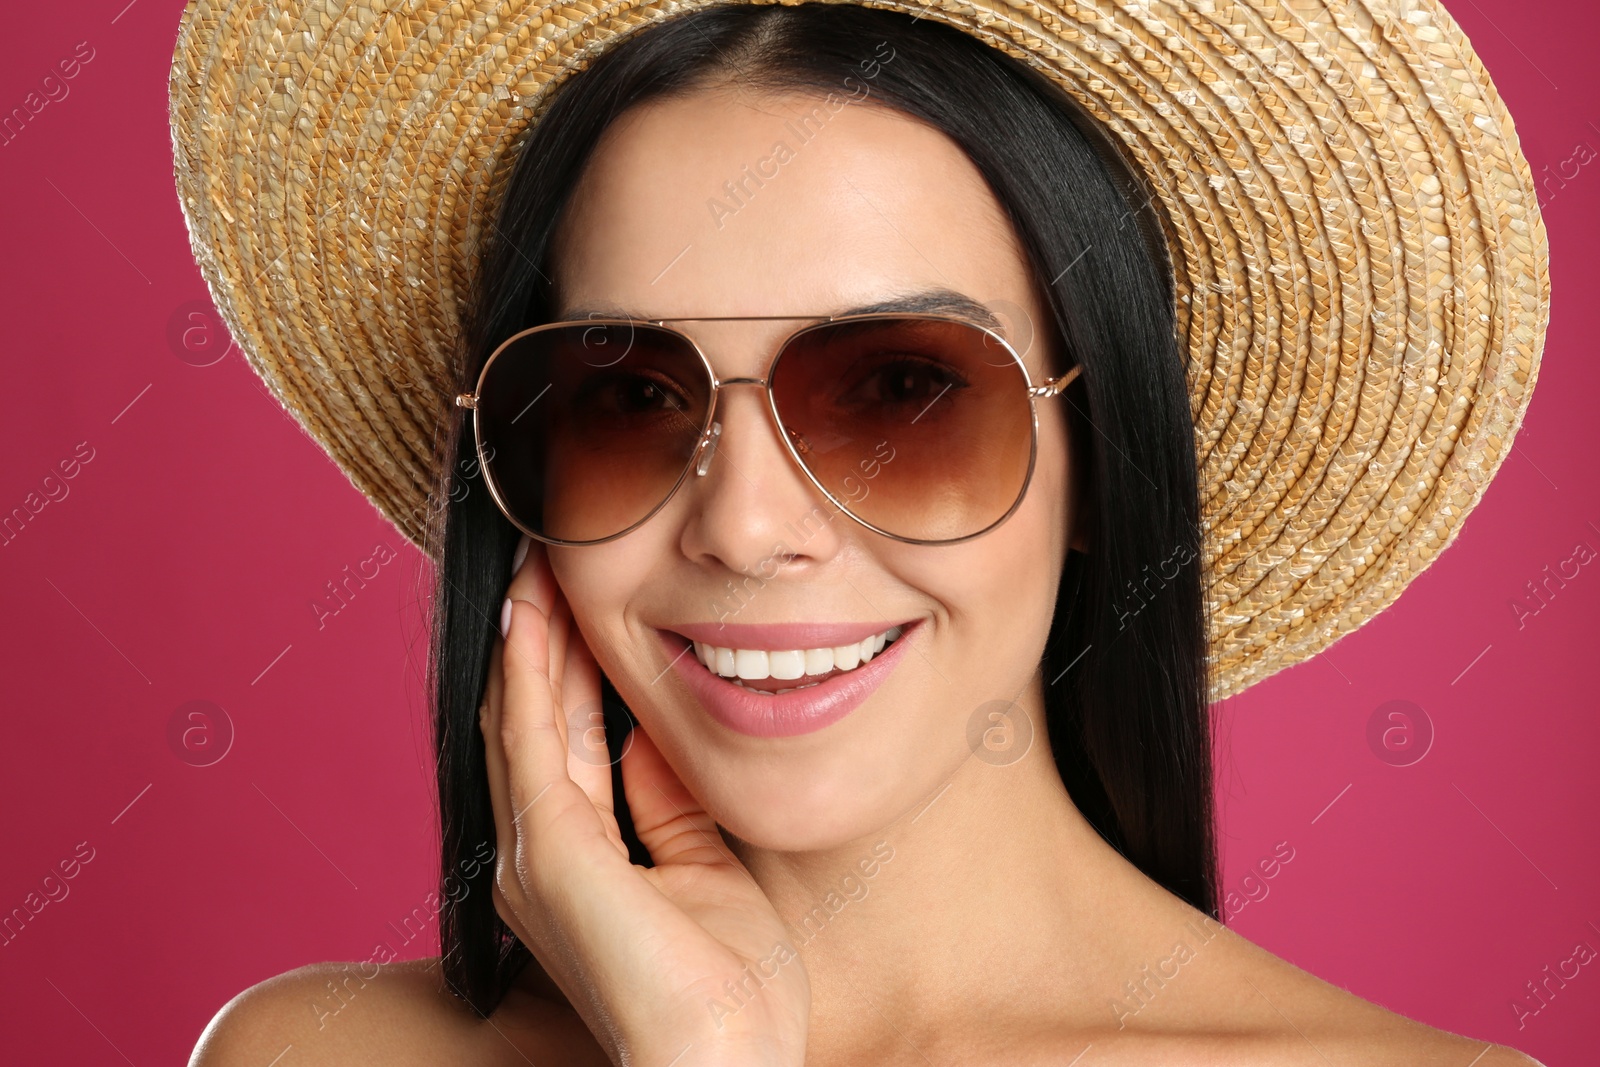 Photo of Beautiful woman wearing sunglasses on pink background, closeup